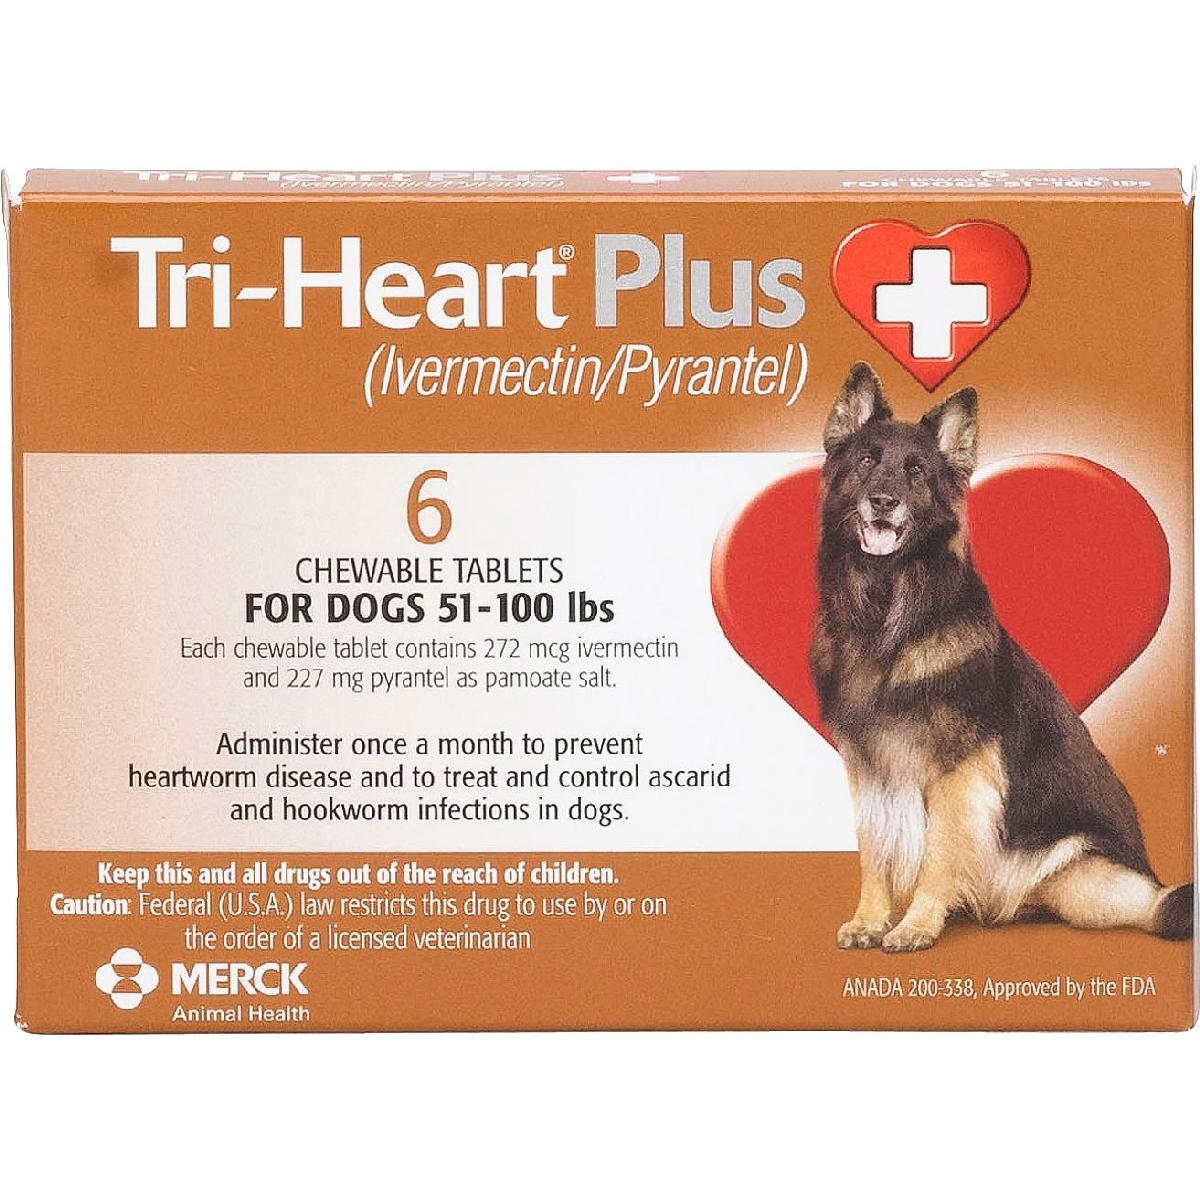 Tri Heart Plus Mail In Rebate